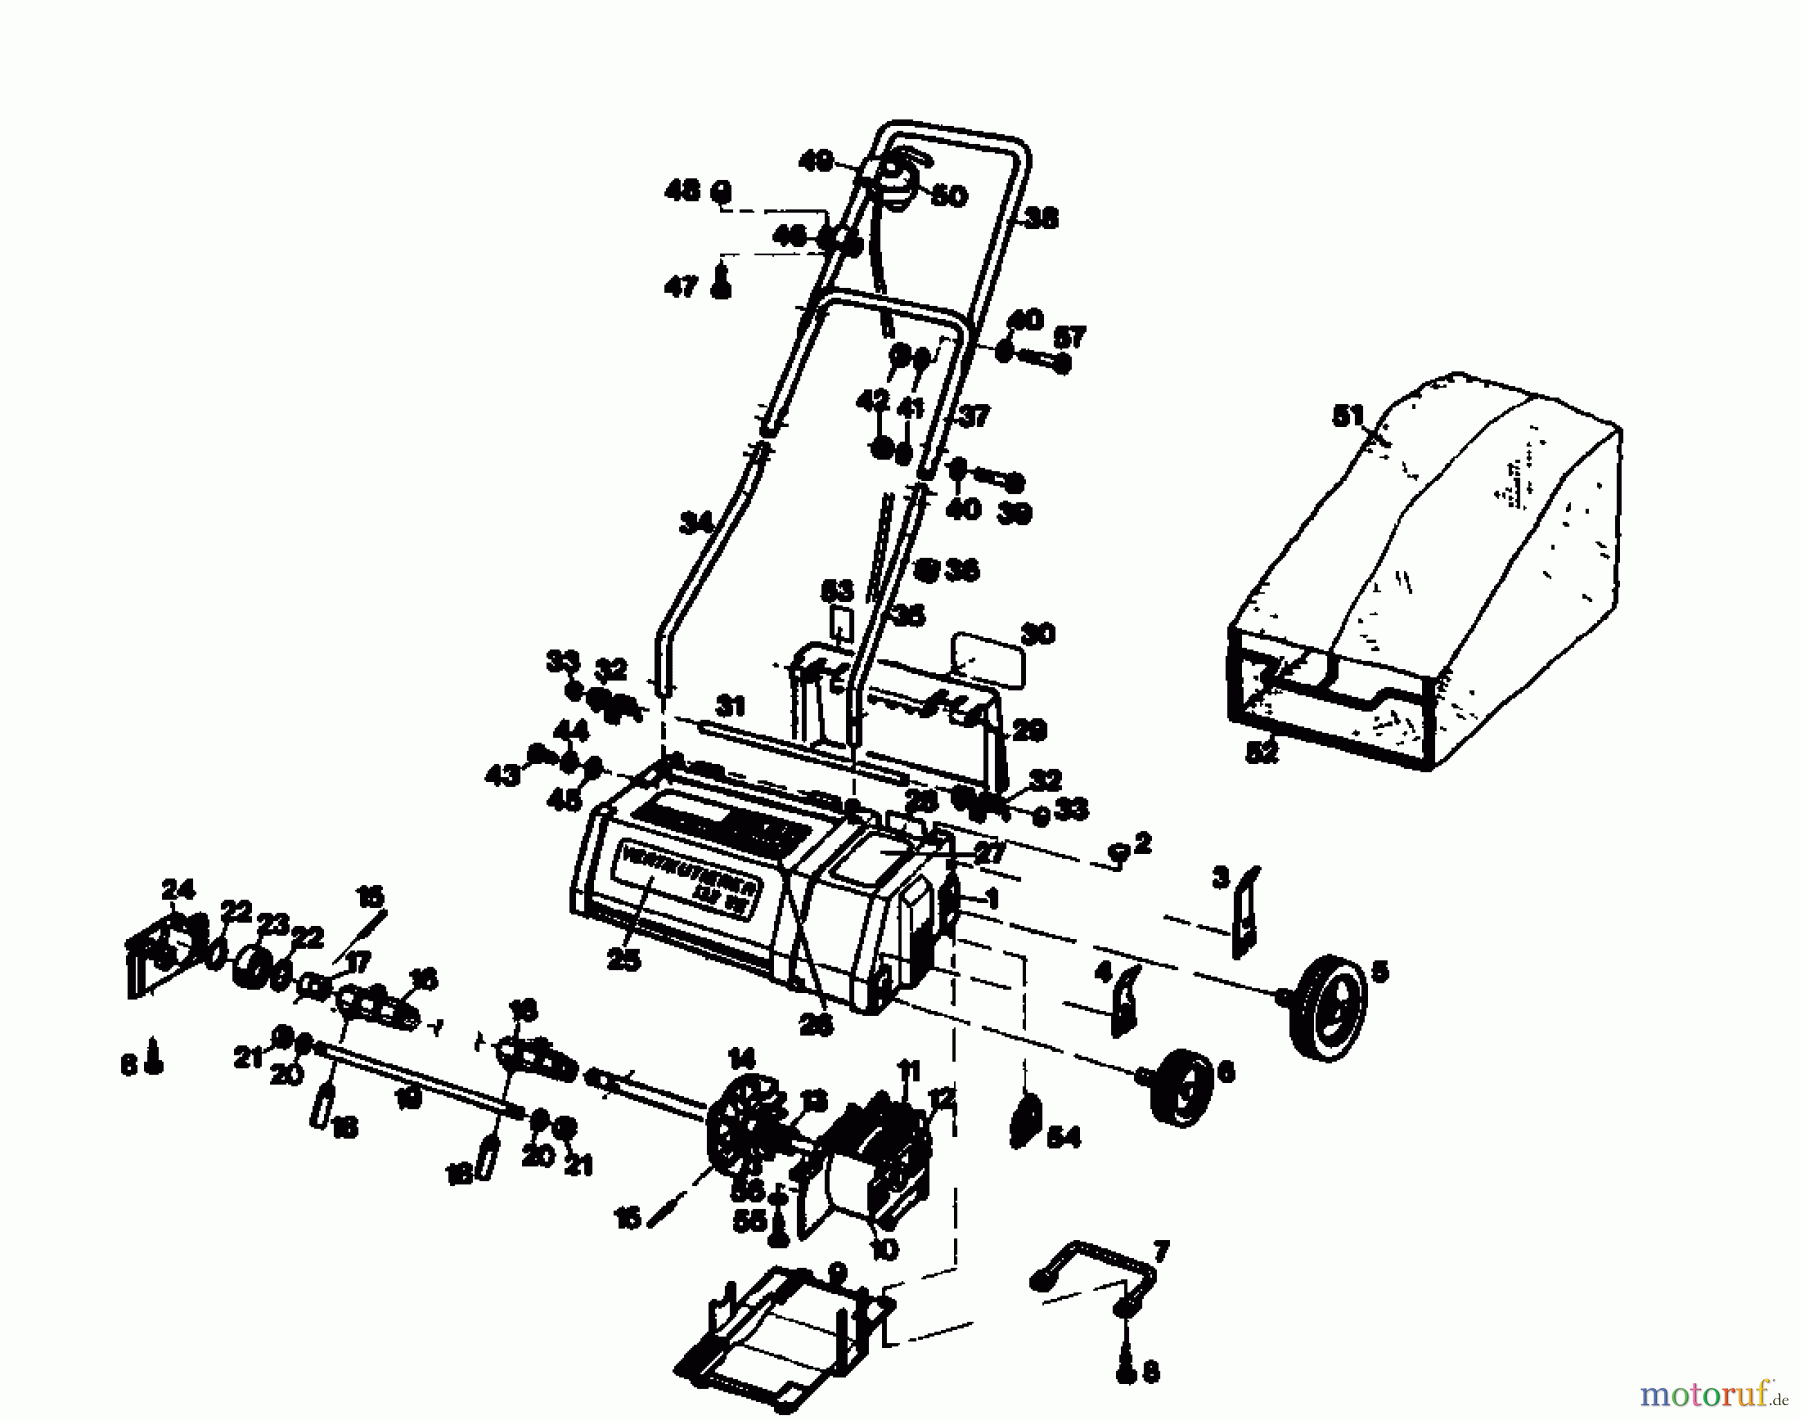  Golf Electric verticutter 132 VE 02890.01  (1986) Basic machine